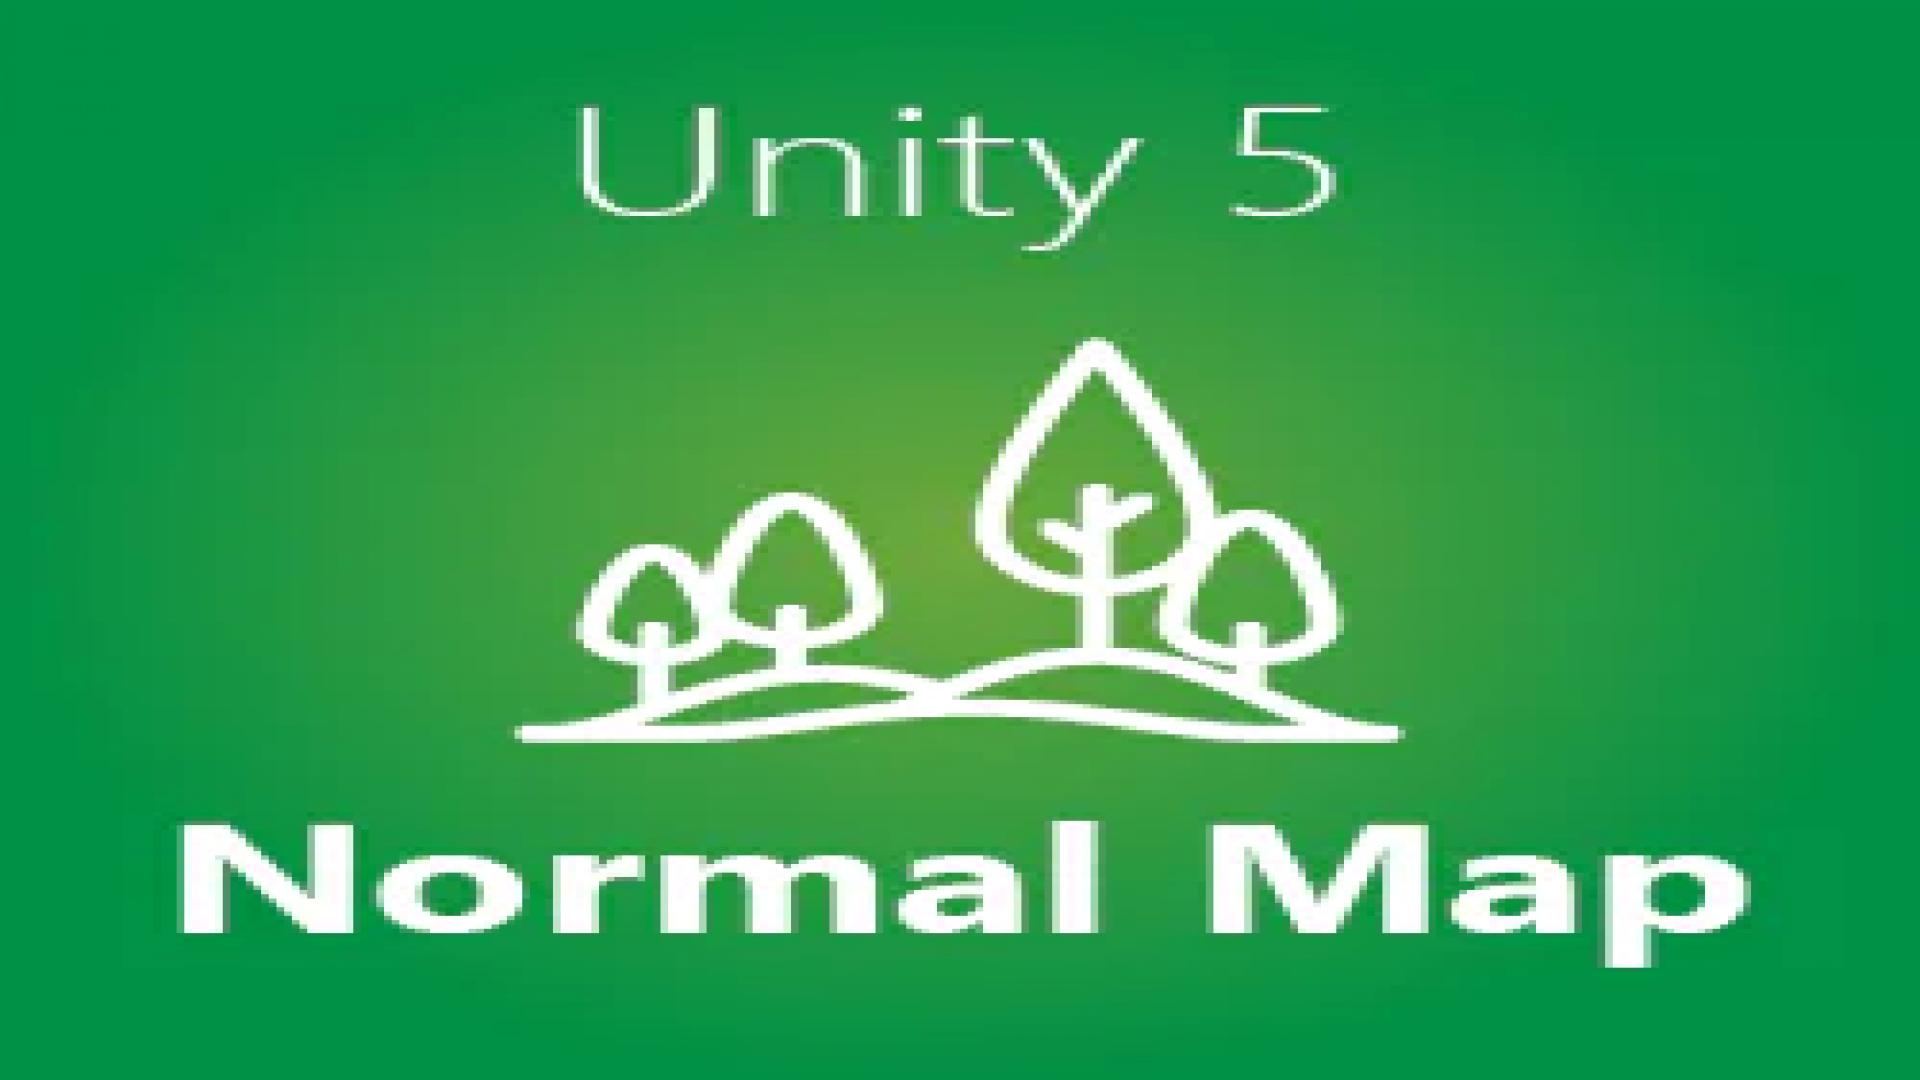 Terrain com Normal Map no Unity 5